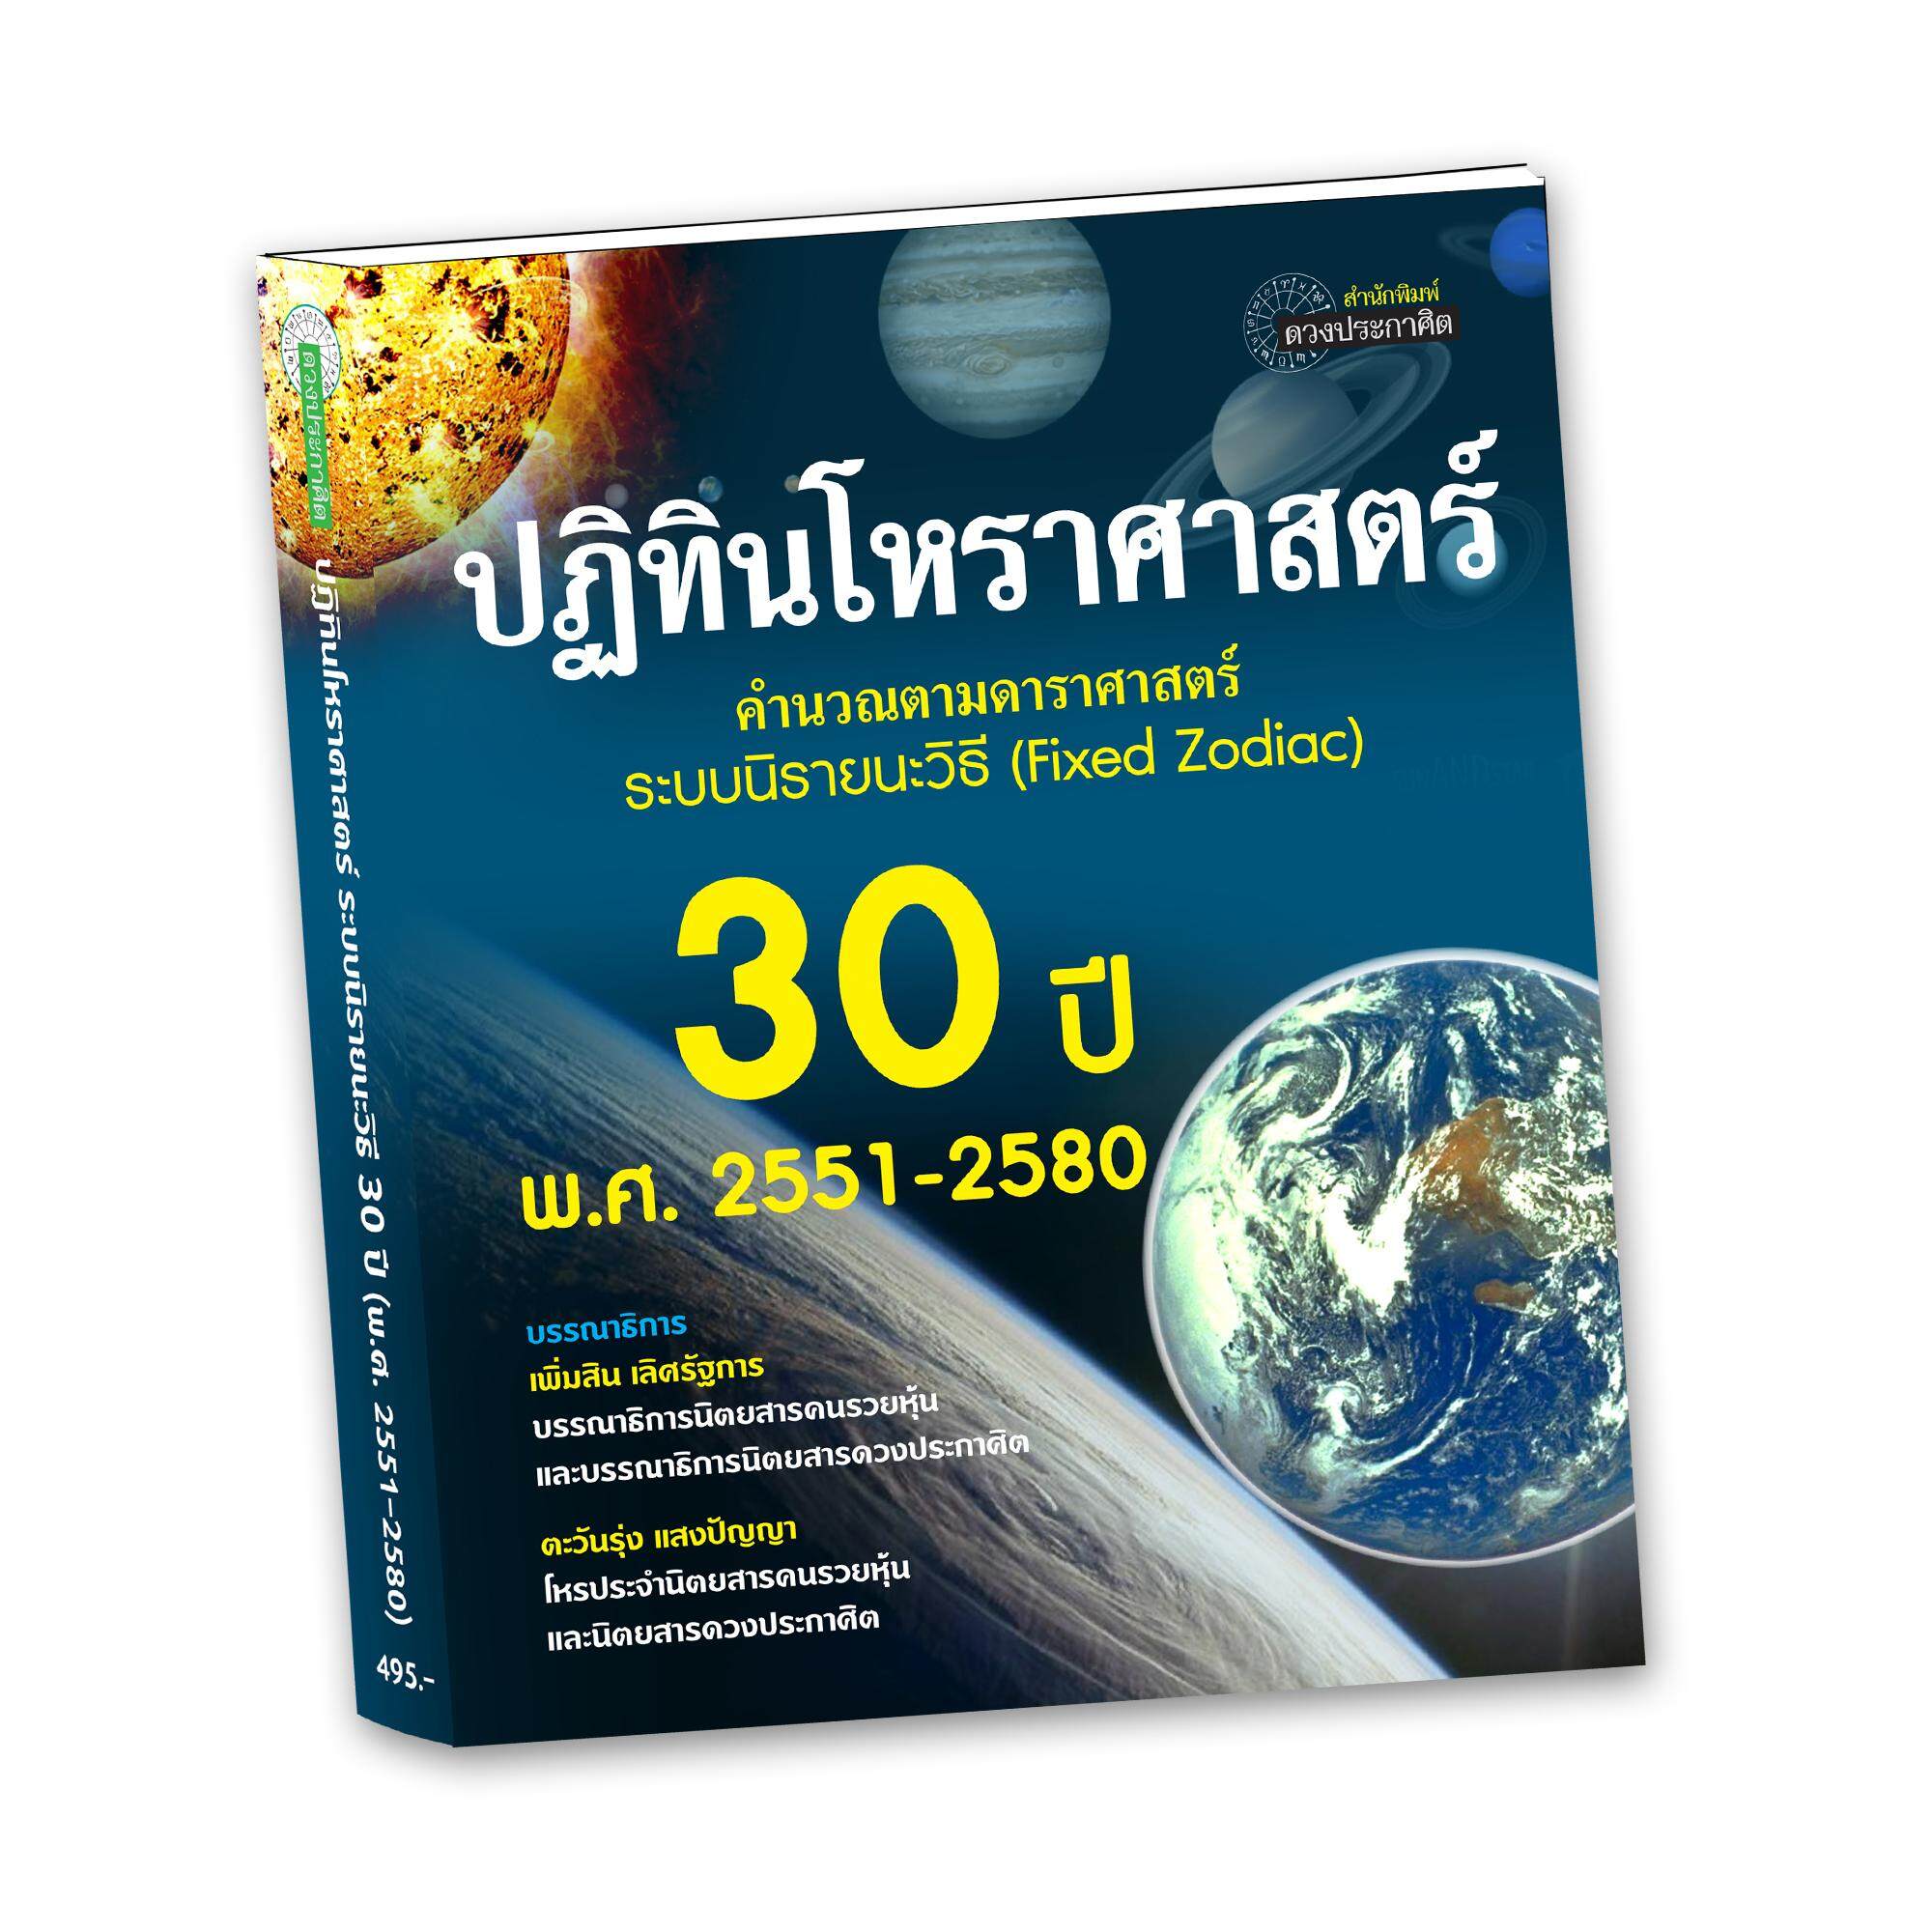 หนังสือ-ปฏิทินโหราศาสตร์ระบบนิรายนะวิธี30ปี (2551-2580)